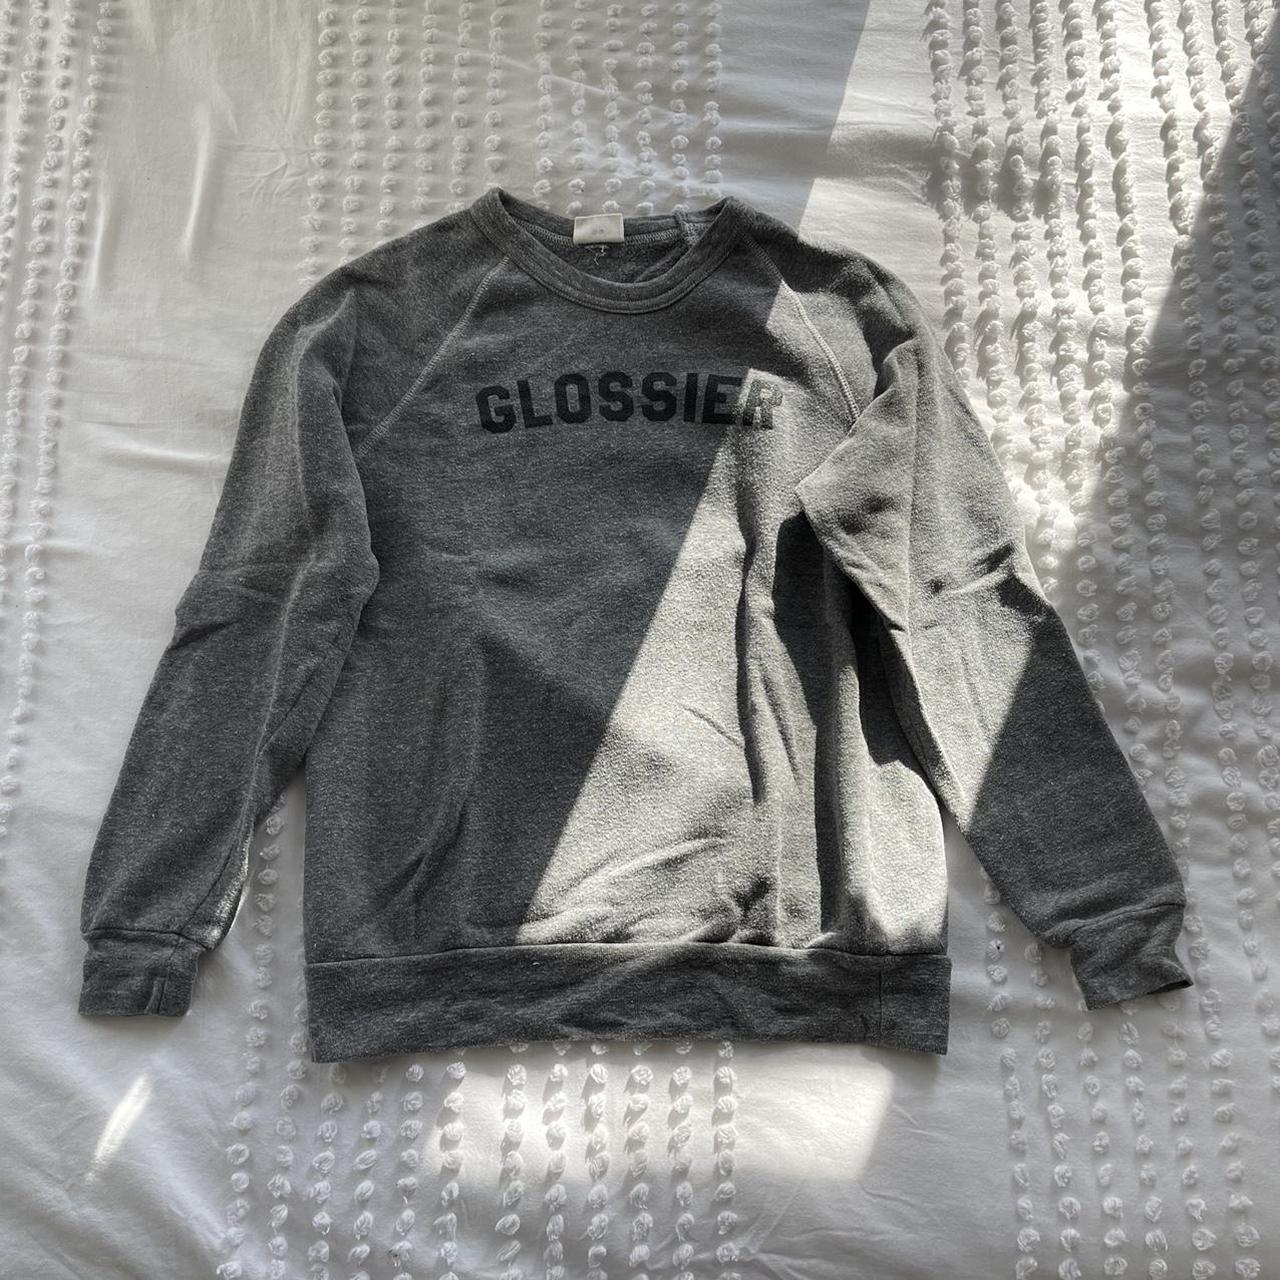 Glossier Women's Grey Sweatshirt | Depop